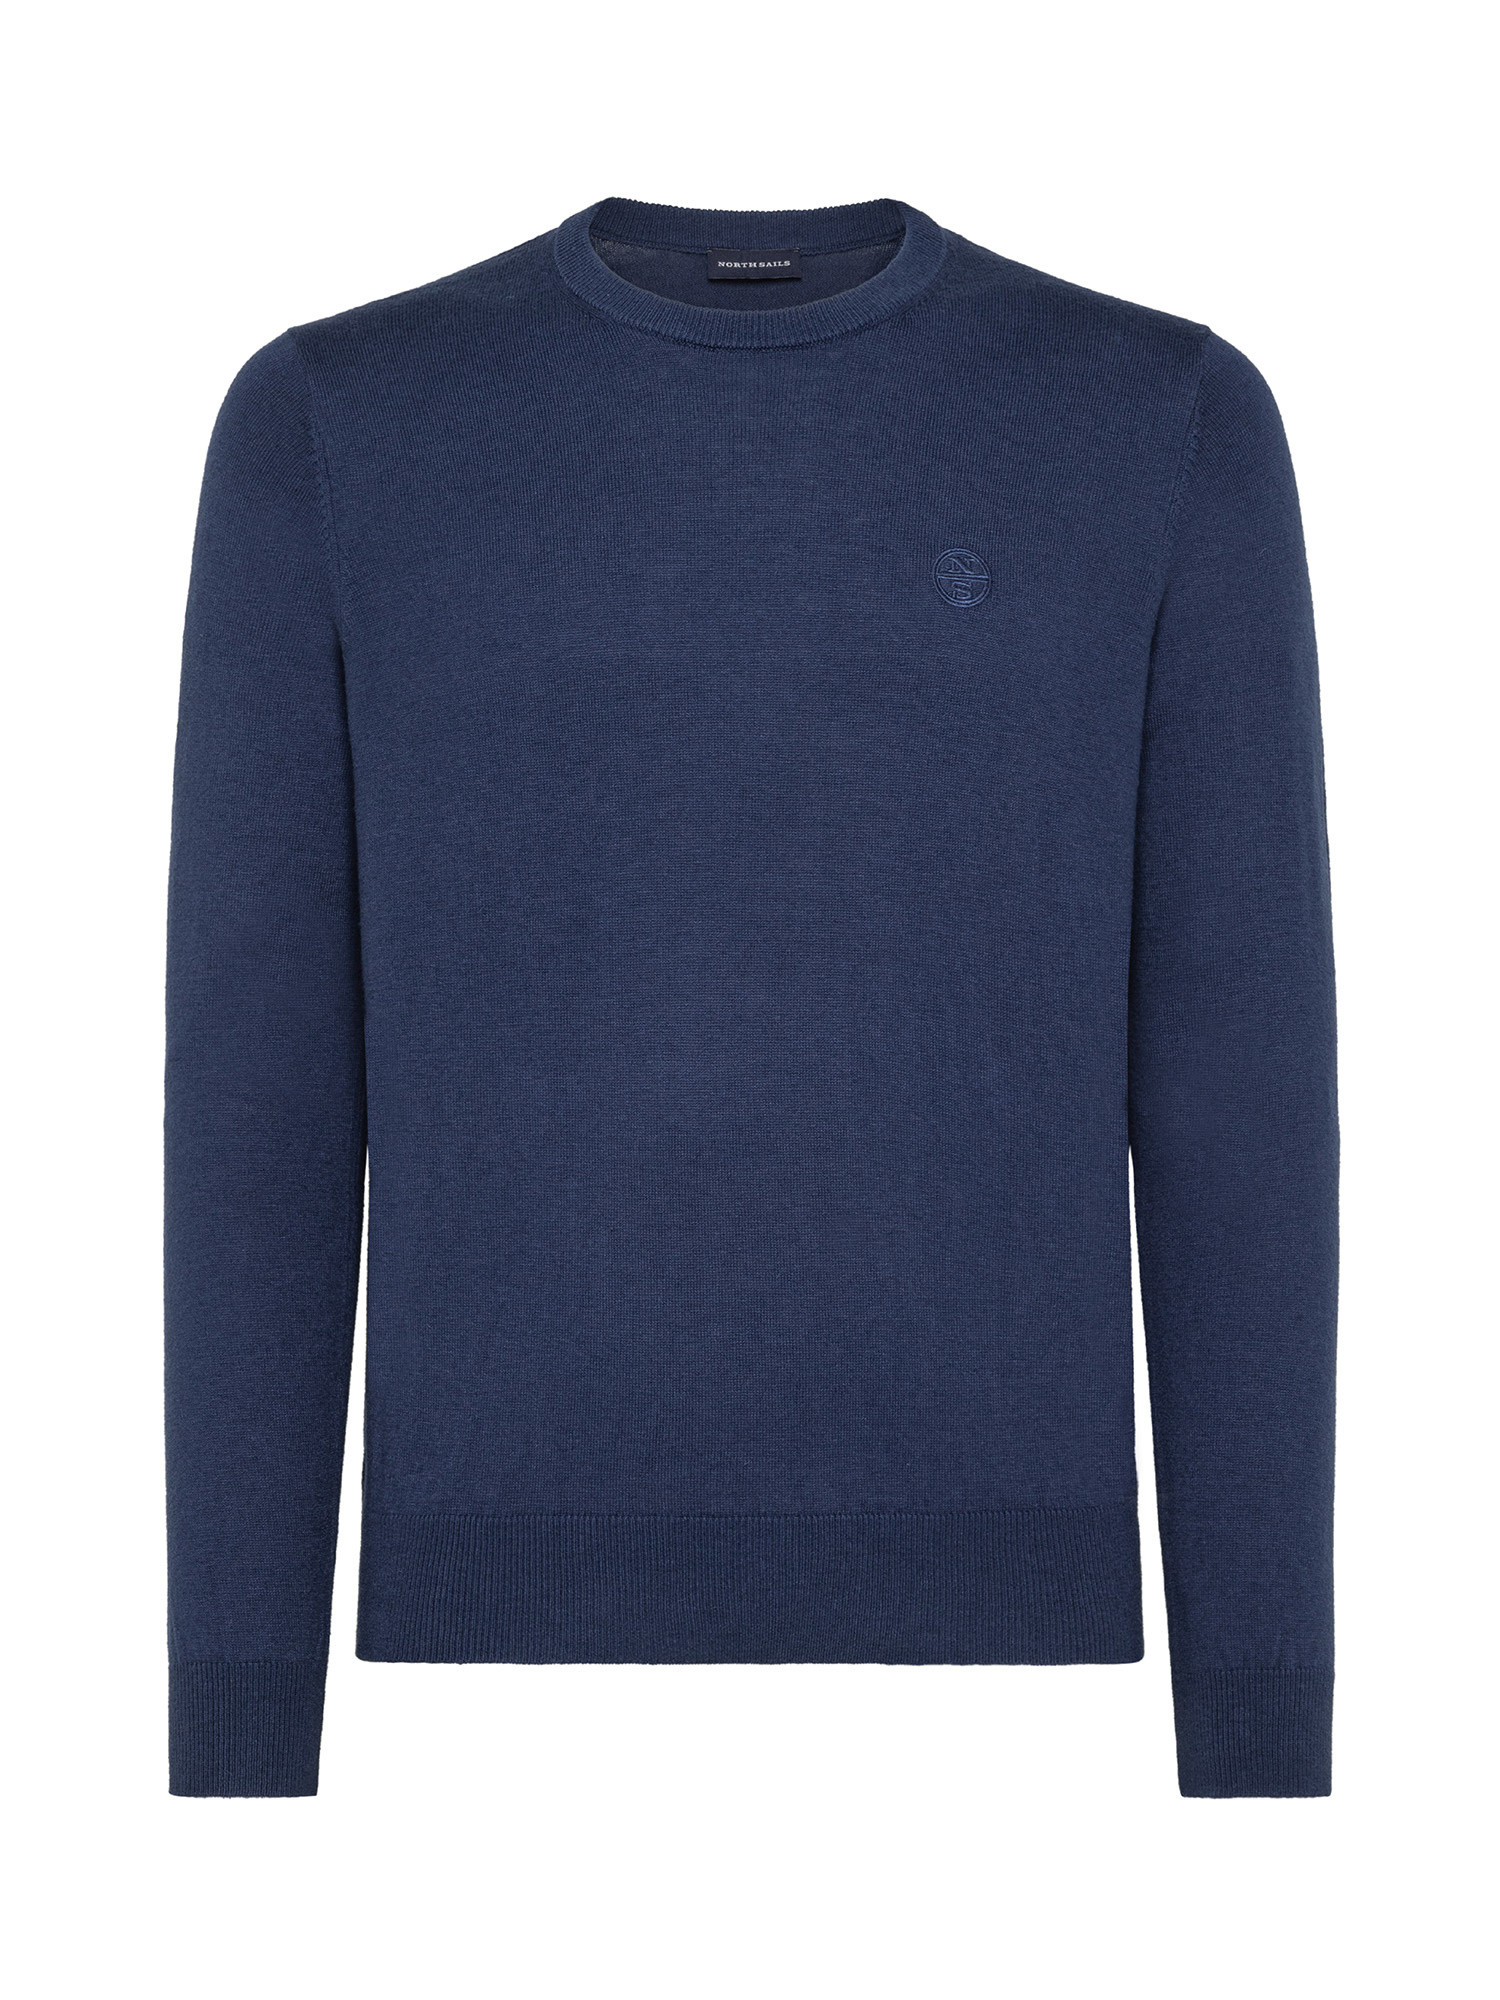 Organic cotton sweatshirt, Denim, large image number 0